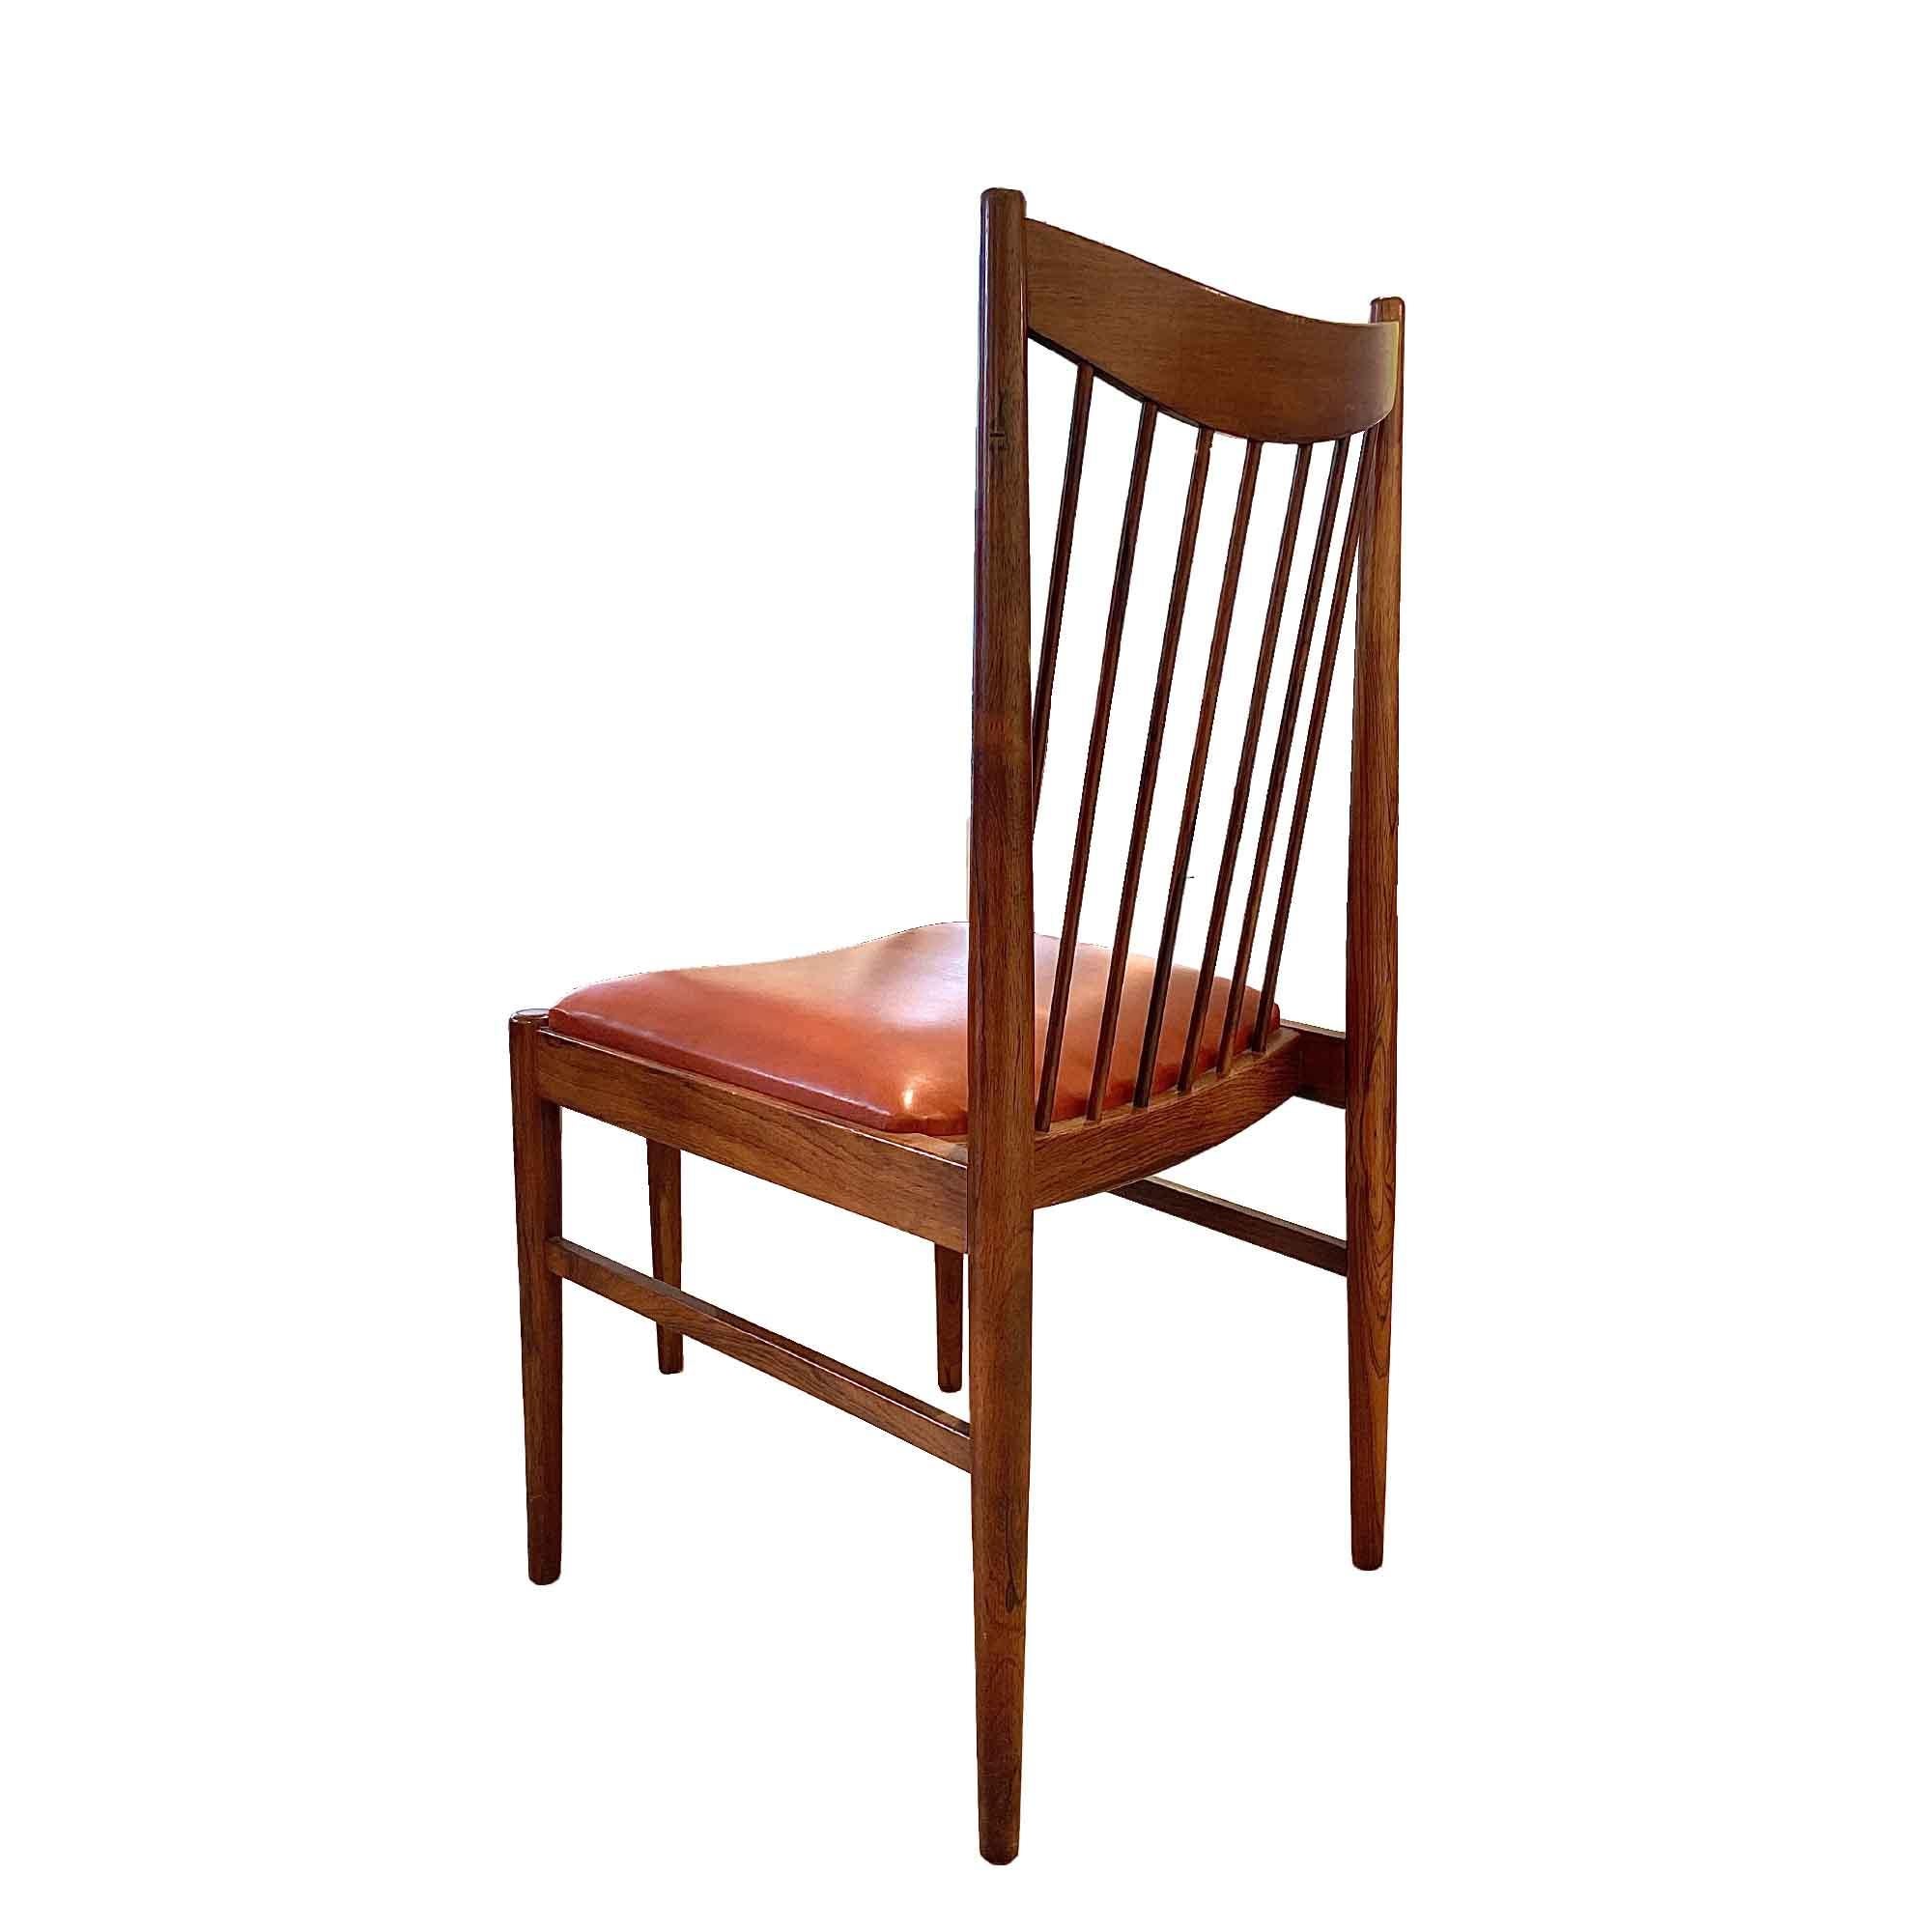 4 chaises en palissandre massif et cuir d'origine, par le grand designer danois Arne Vodder.
Leur forme graphique, à la fois raffinée et affirmée, ainsi que leur belle patine de cuir offrent une brillance subtile et donnent du chic à ces